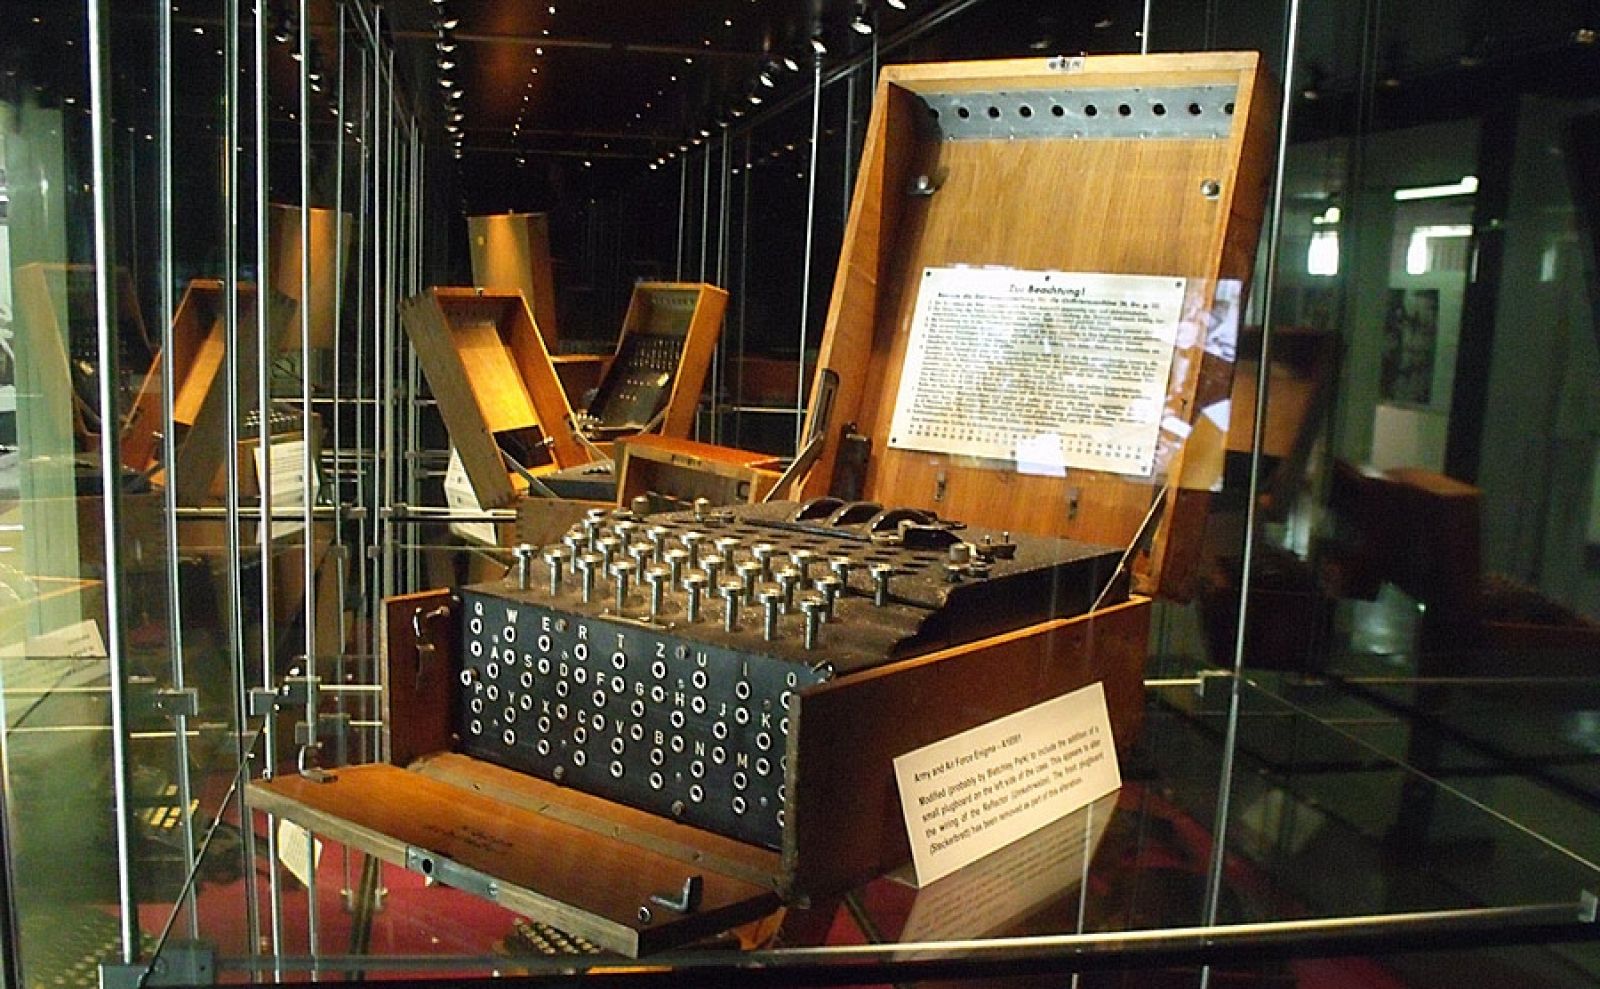 La máquina Enigma alemana era el objetivo de los trabajos de descifrado de códigos en Bletchley Park.